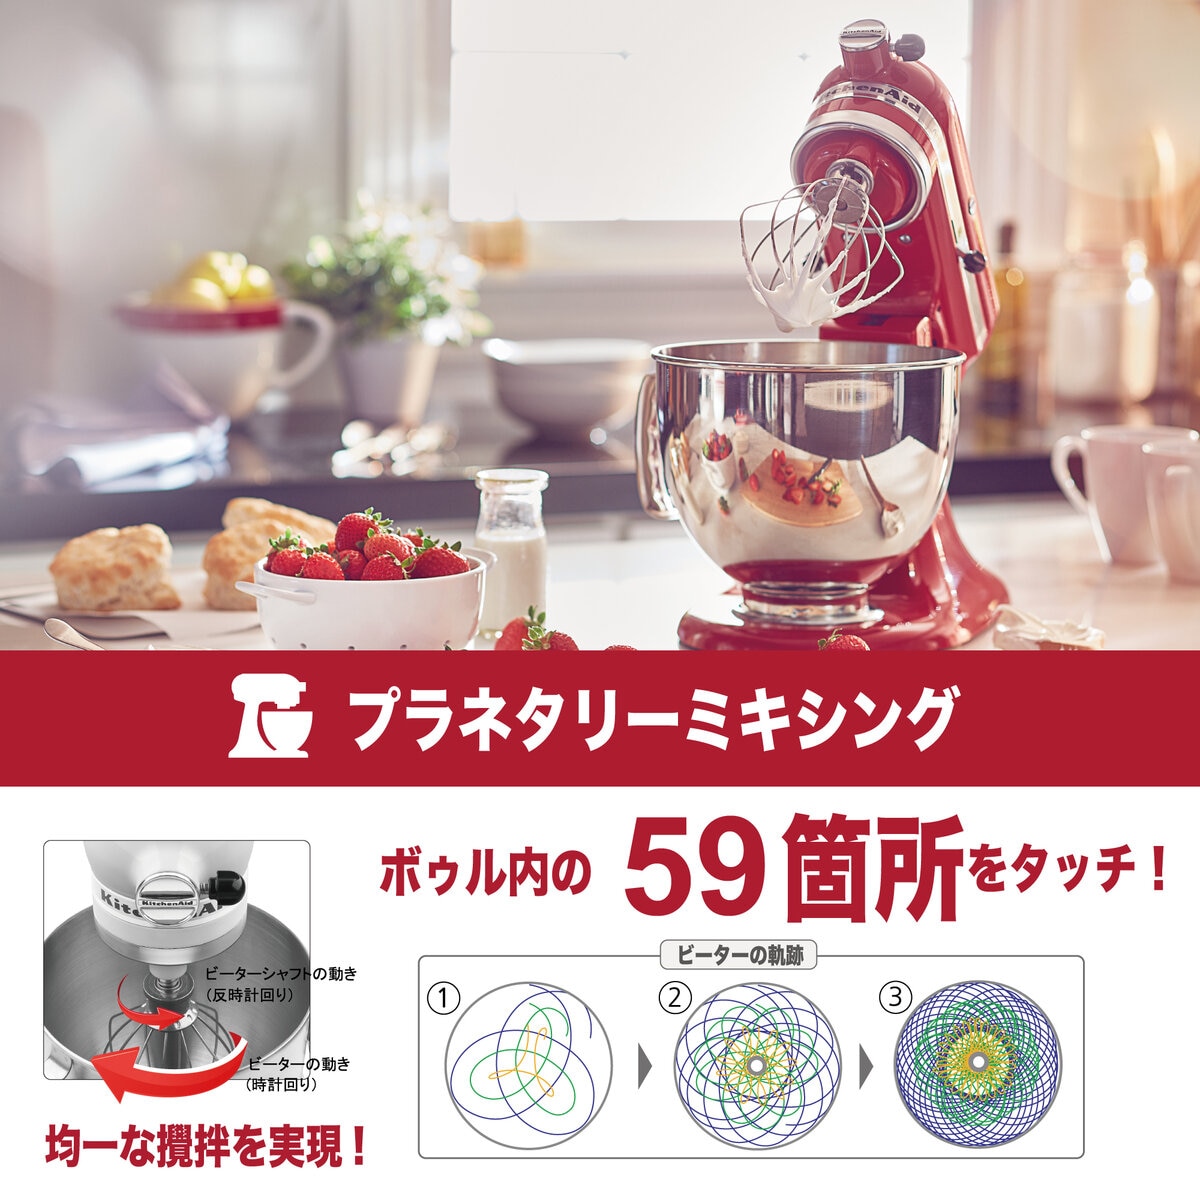 キッチンエイド スタンドミキサー4.3リットル | Costco Japan